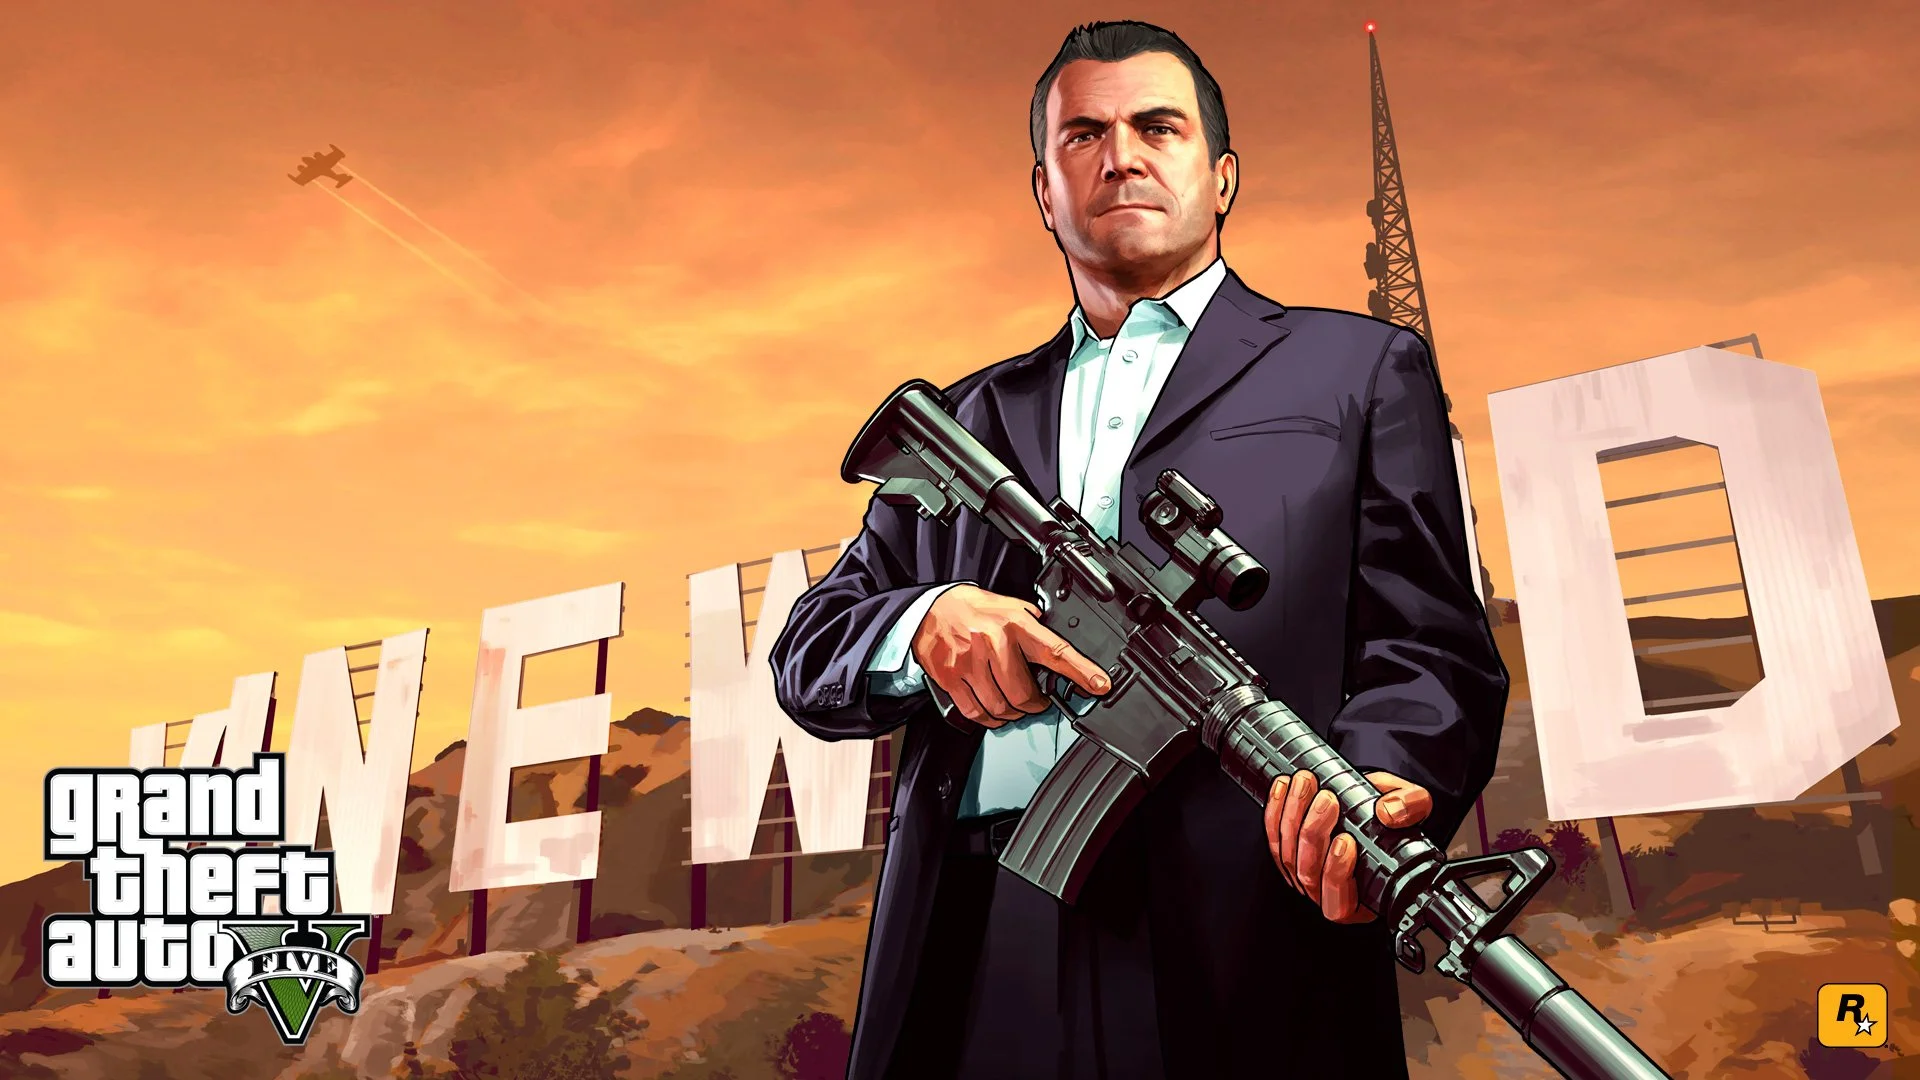 Grand Theft Auto V разошлась тиражом в 16 млн копий за первую неделю - изображение обложка